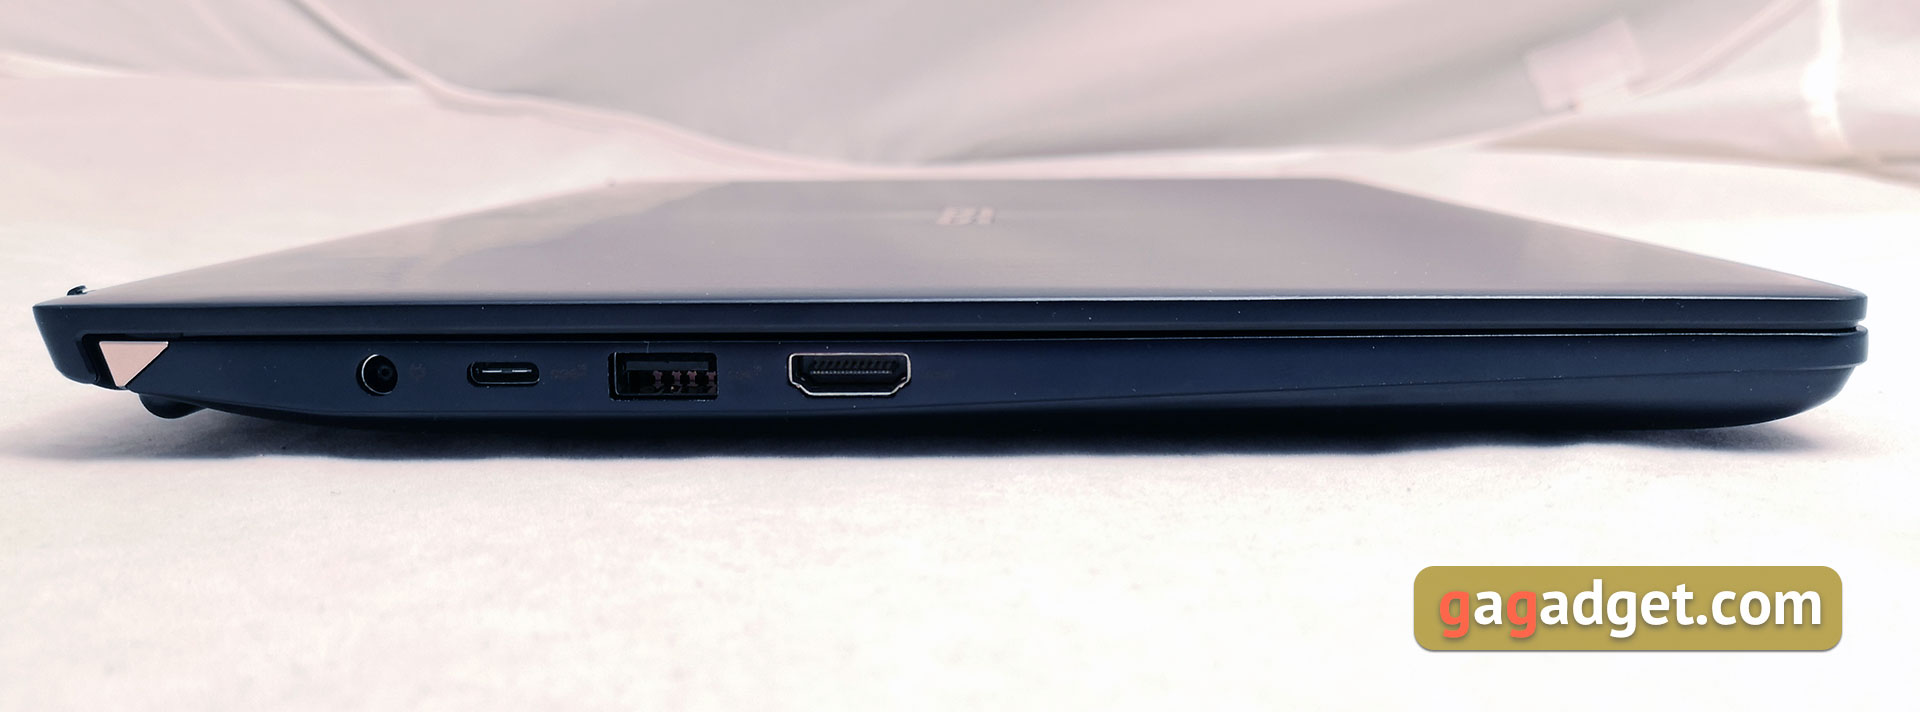 Обзор ASUS ZenBook Pro 14 UX450FD: компактный 14-дюймовый ноутбук с NVIDIA GeForce 1050 Max-Q-5